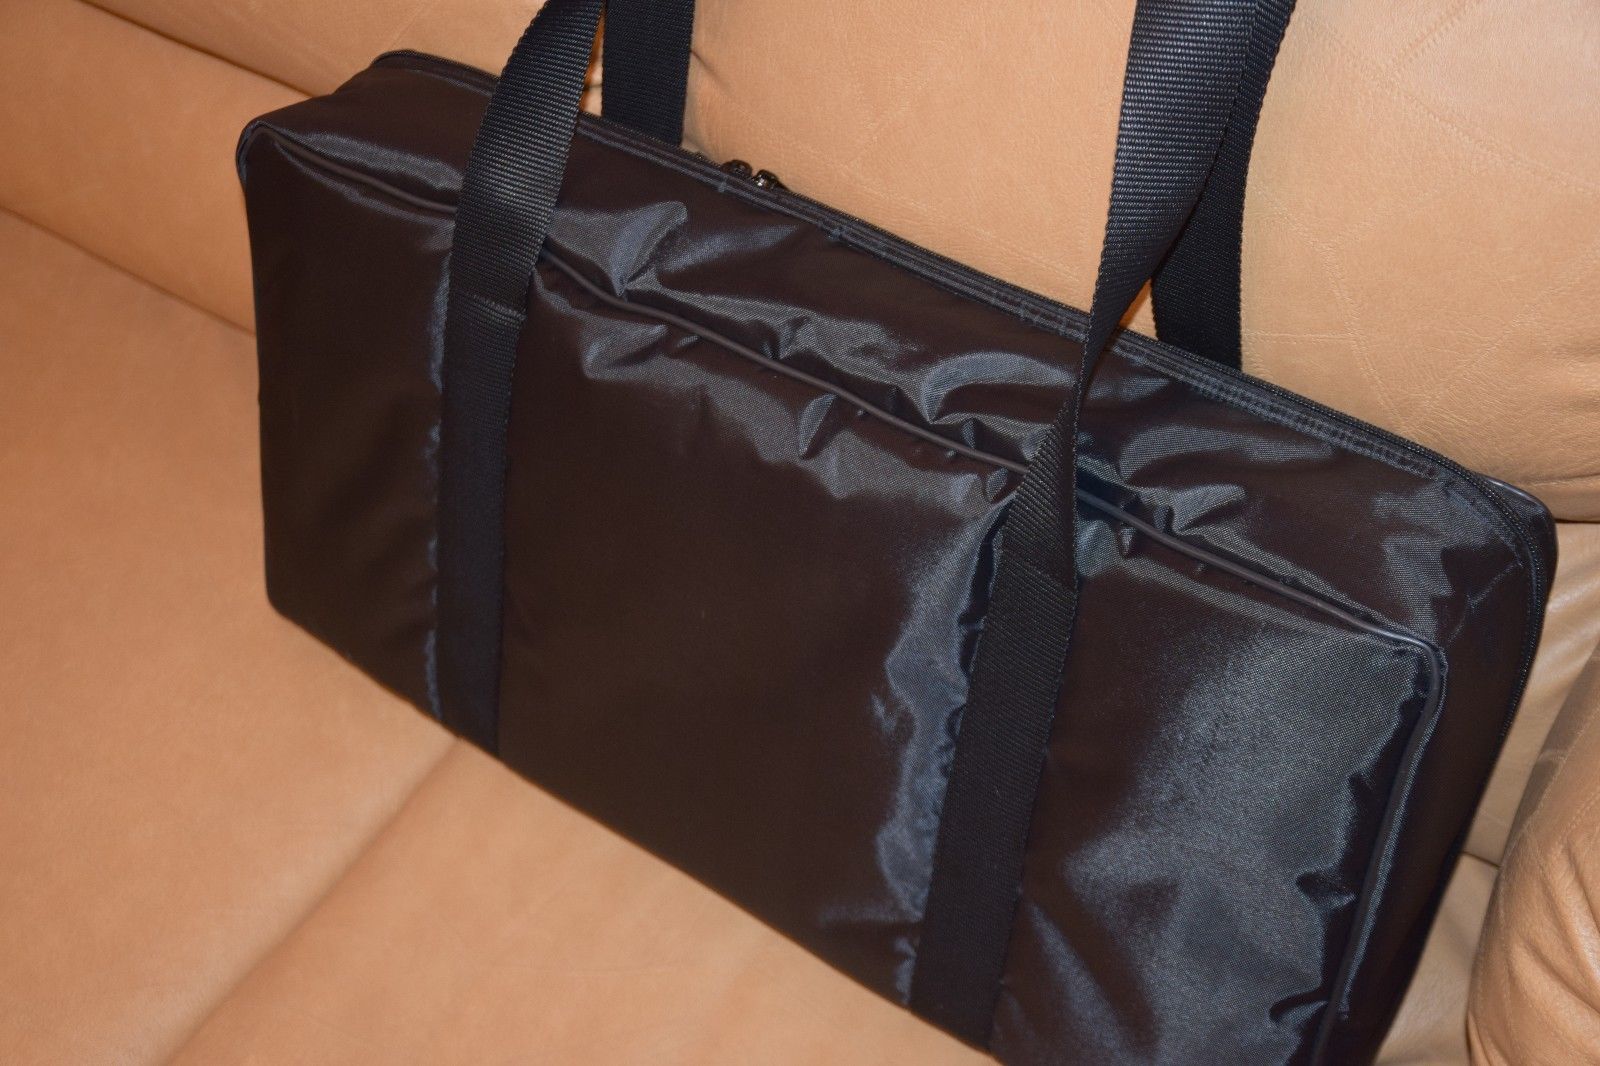 Korg Triton Taktile 49 Key Custom Padded Keyboard and Synth Travel Bag Soft Case Inside Velvet Interior Heavy Duty Nylon Protection Slip Cover